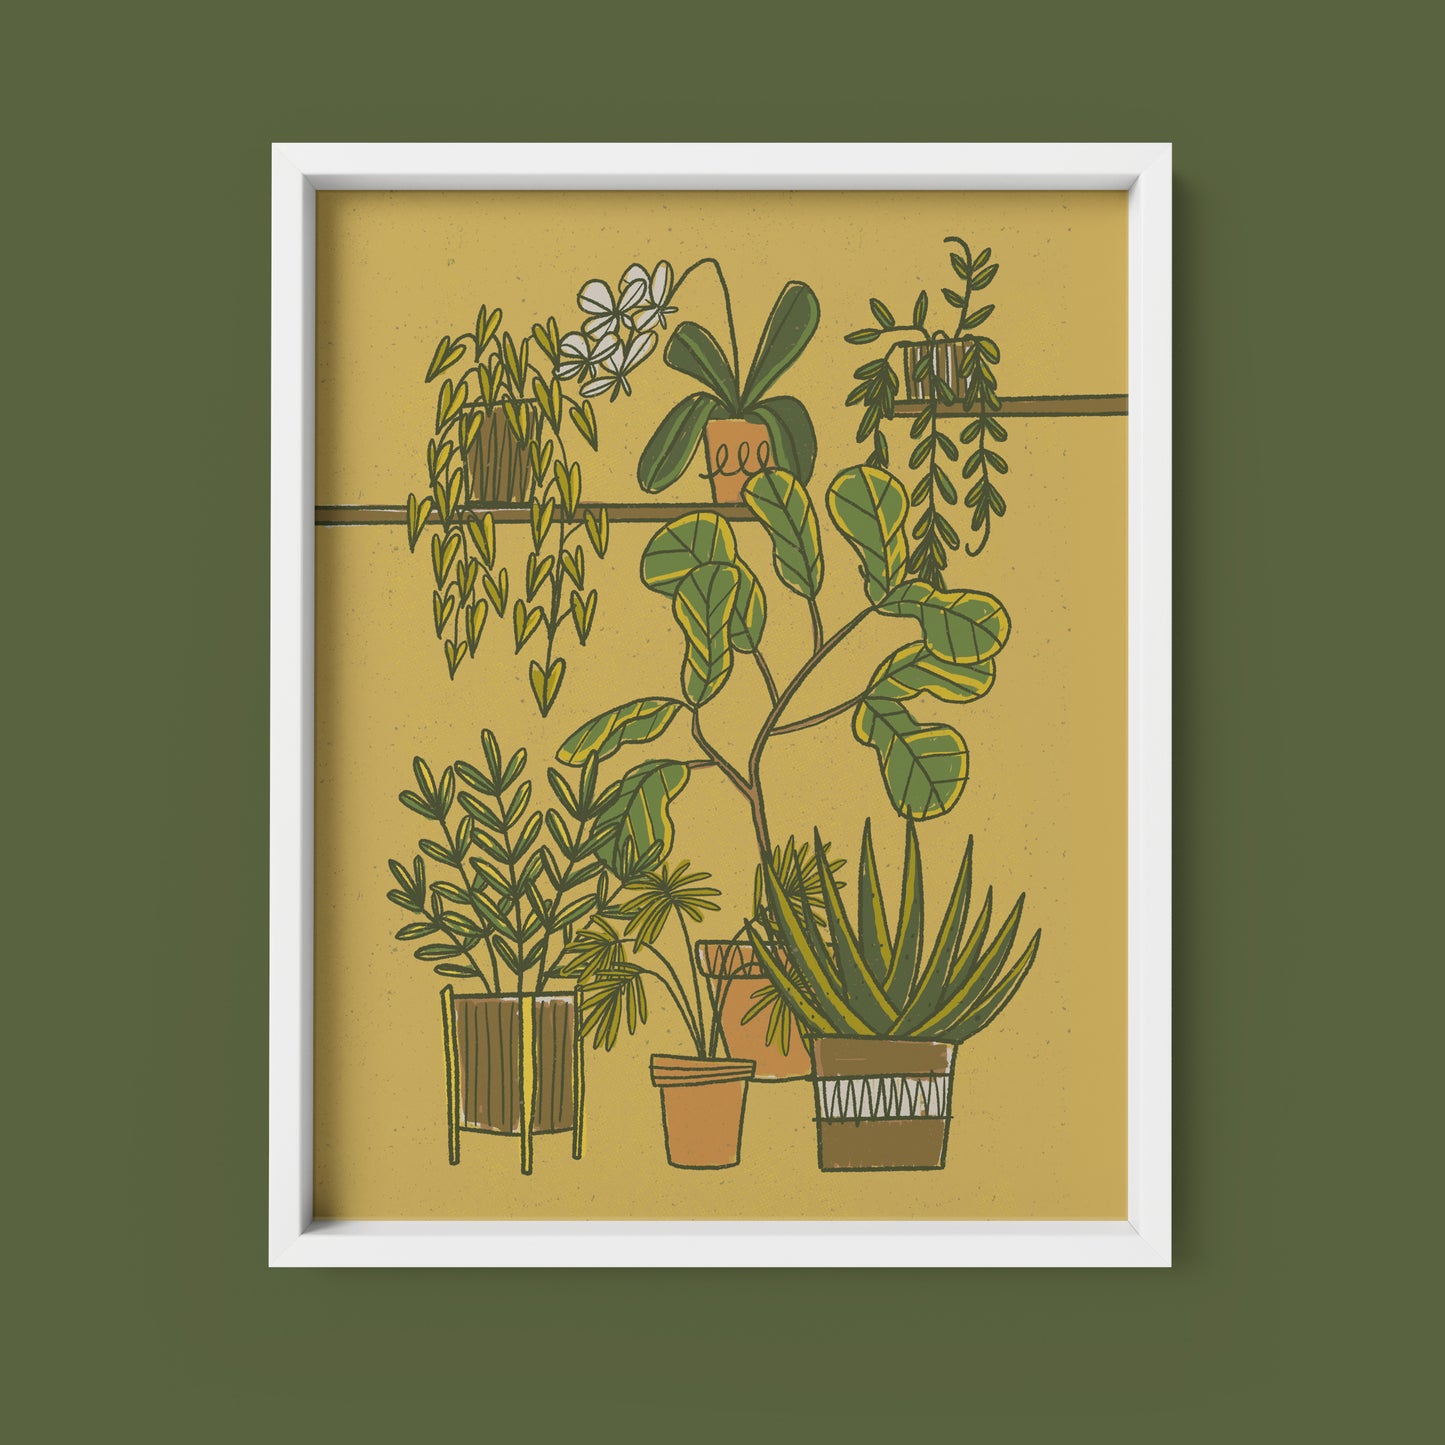 Indoor Plants Art Print